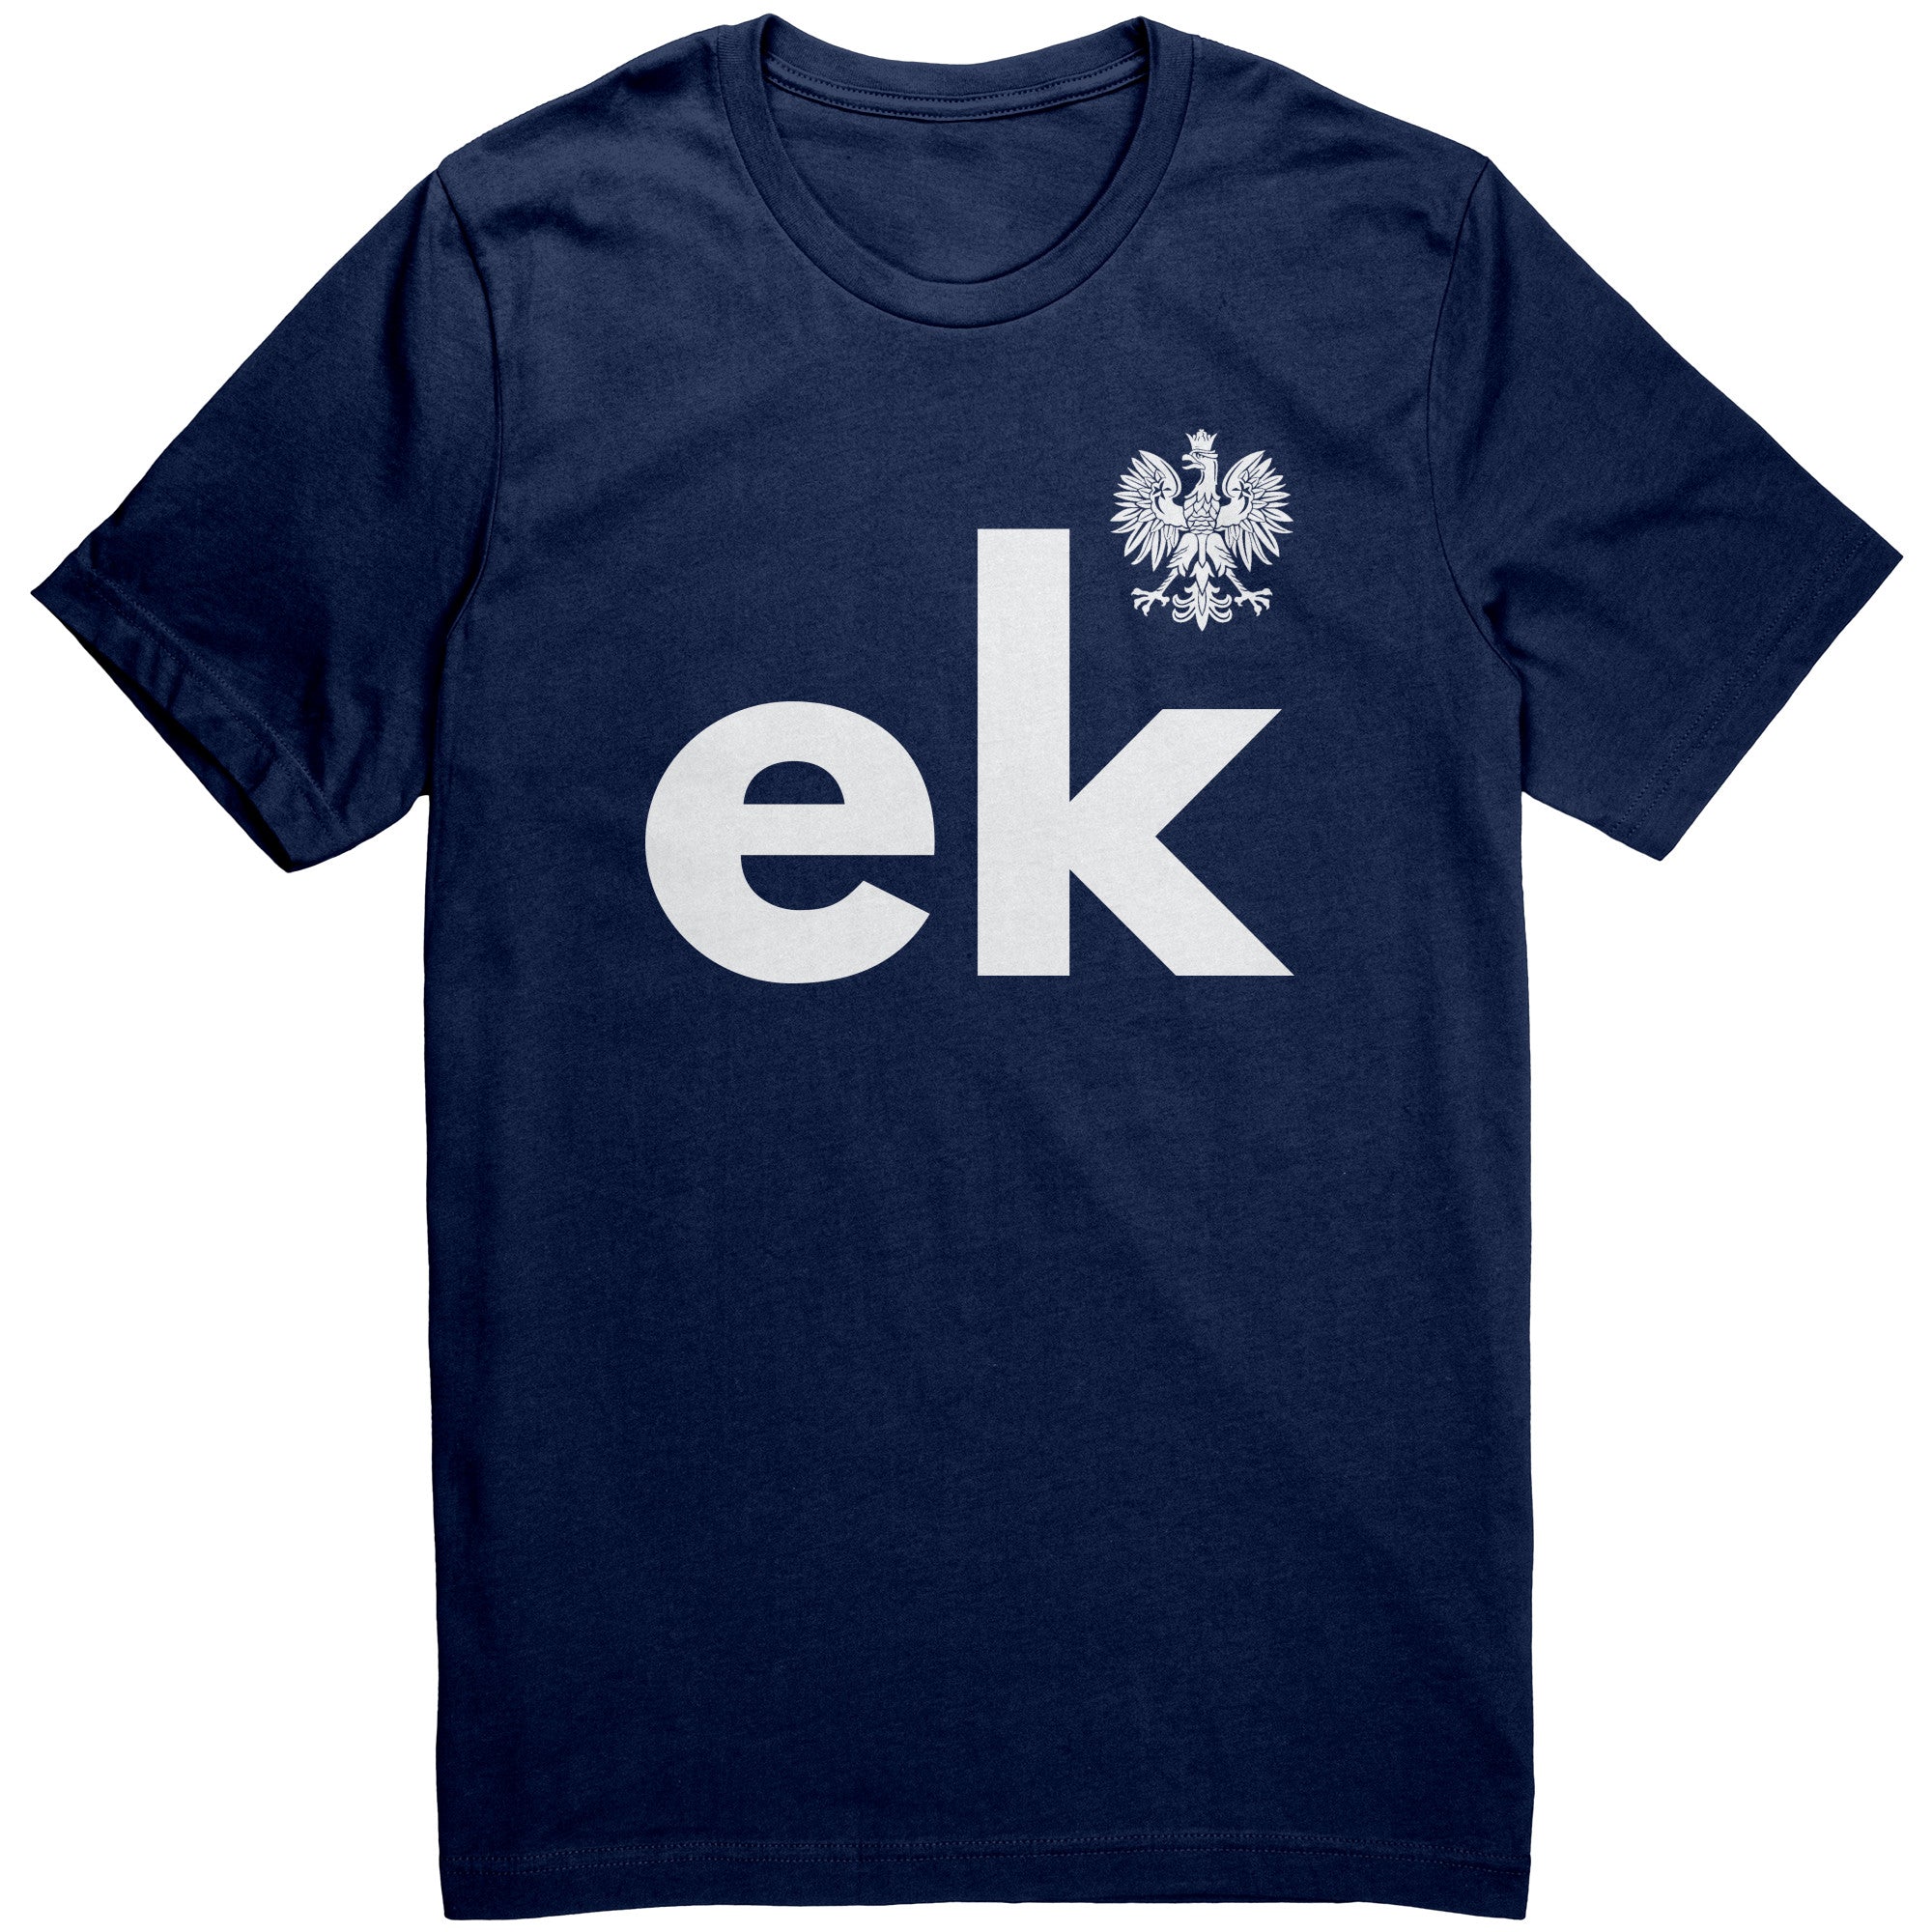 -ek unisex name eagle – Heritage shirt with Polish Last My